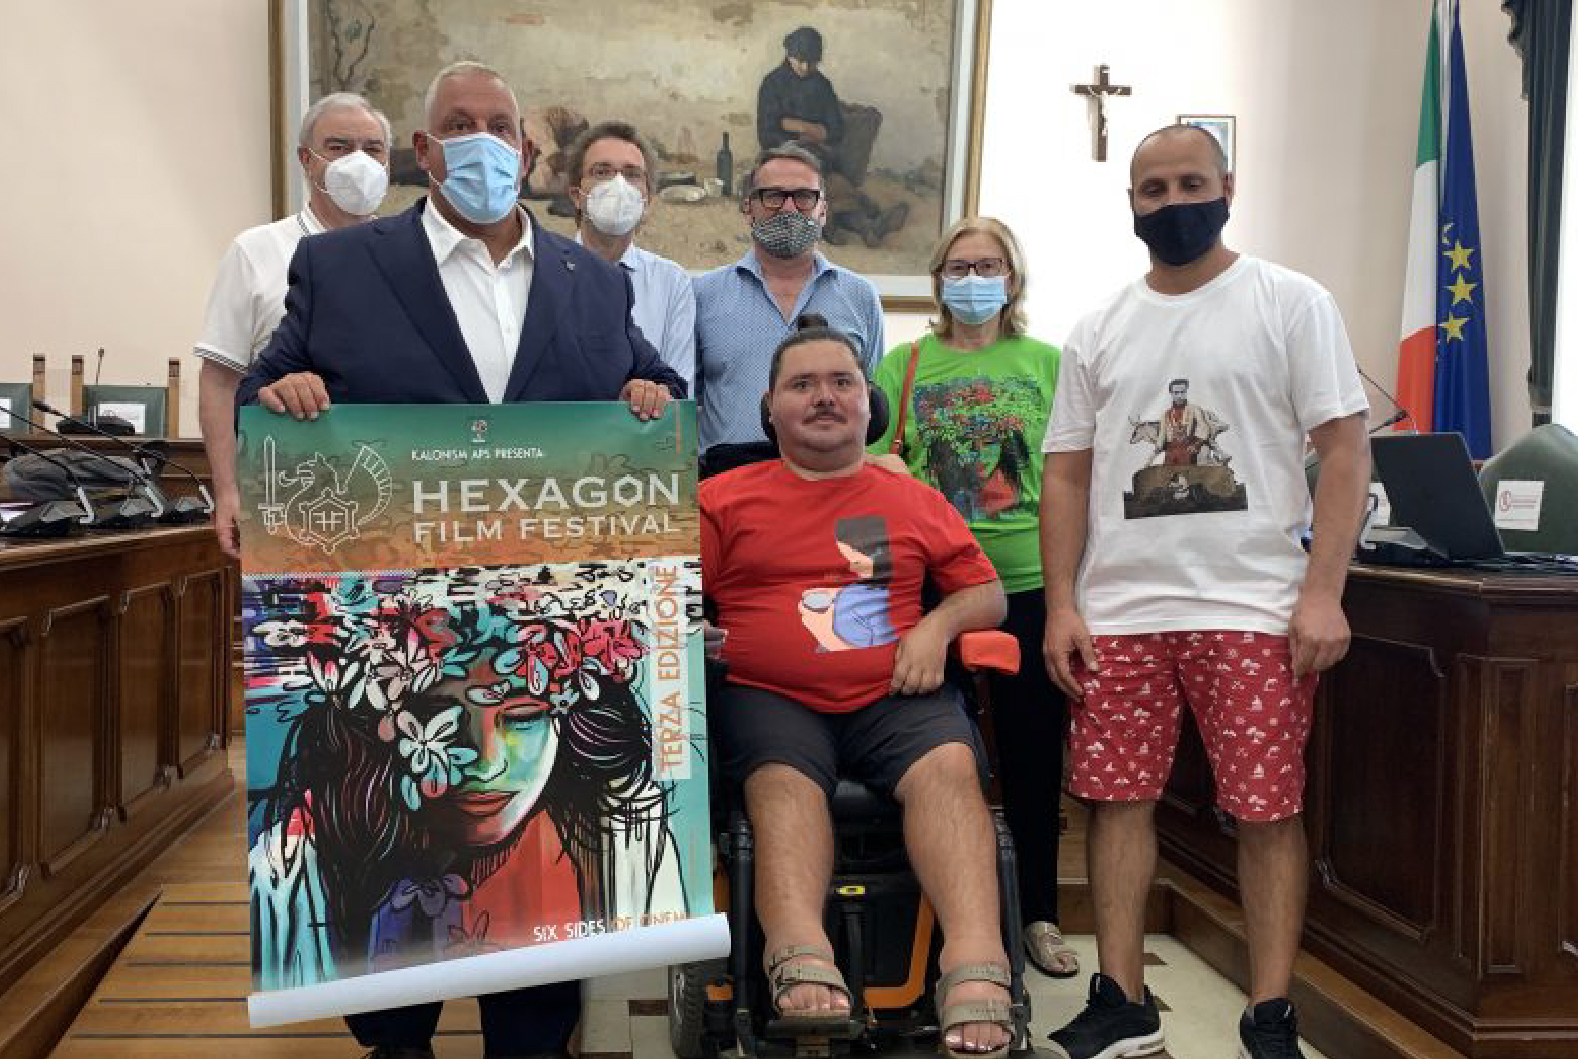 Hexagon Film Festival 2021: La Presentazione Dell’edizione 2021